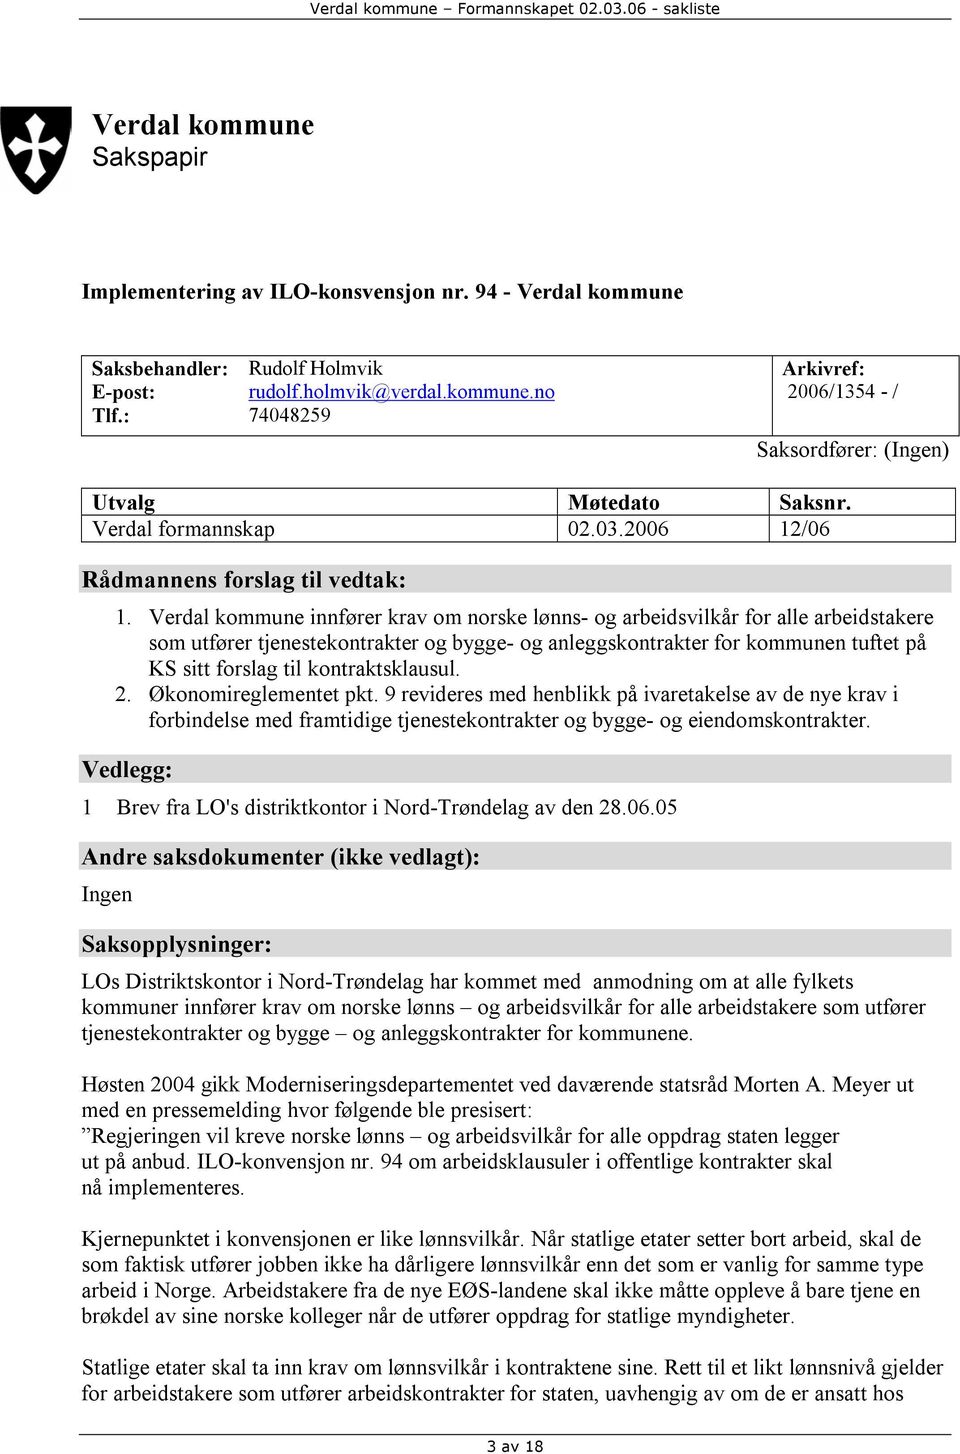 Verdal kommune innfører krav om norske lønns- og arbeidsvilkår for alle arbeidstakere som utfører tjenestekontrakter og bygge- og anleggskontrakter for kommunen tuftet på KS sitt forslag til